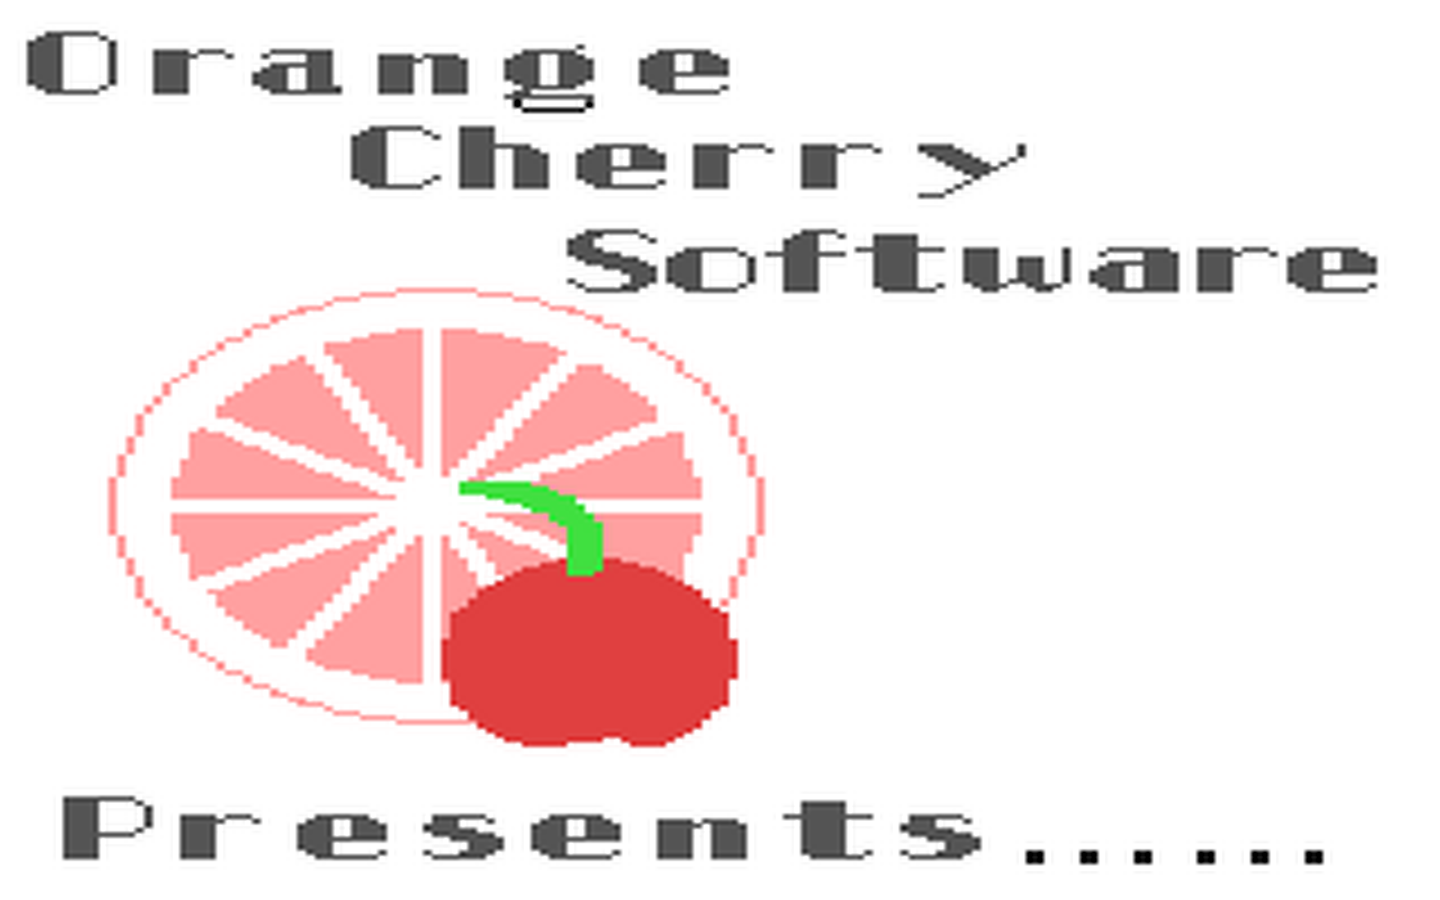 C64 GameBase Cloze_Technique_-_Famous_Fables Orange_Cherry_Software 1986